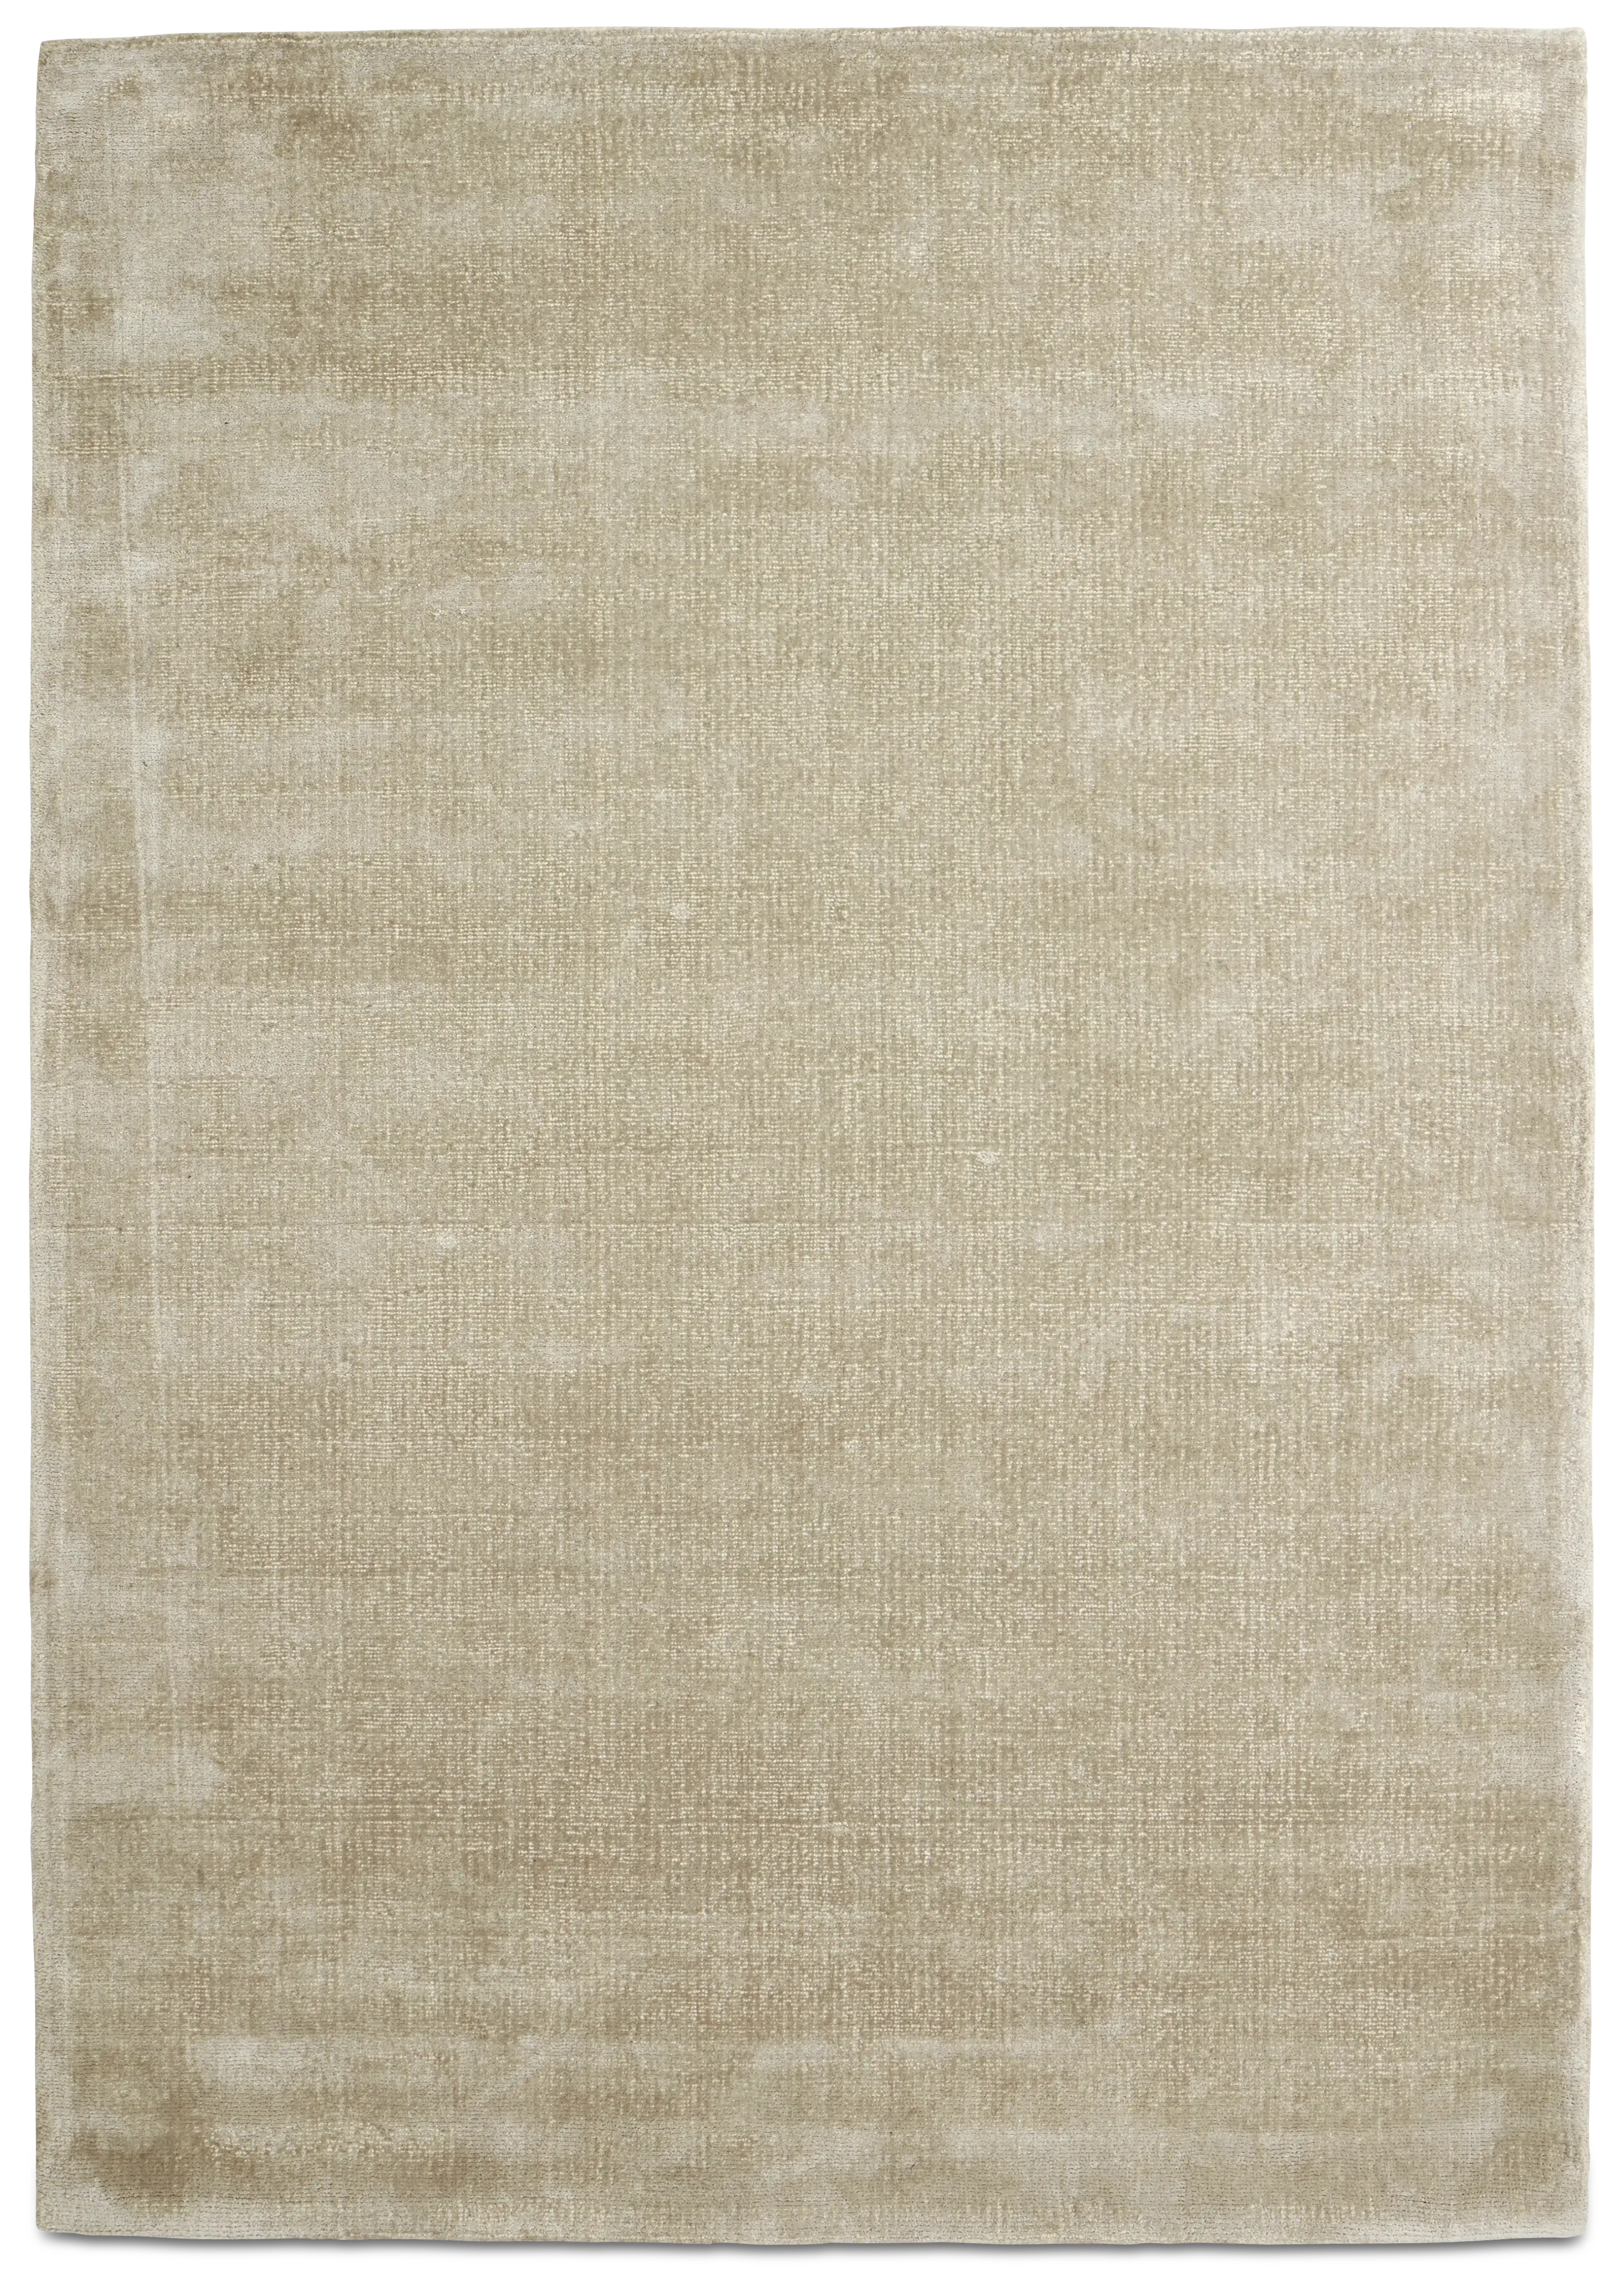 Simple rug